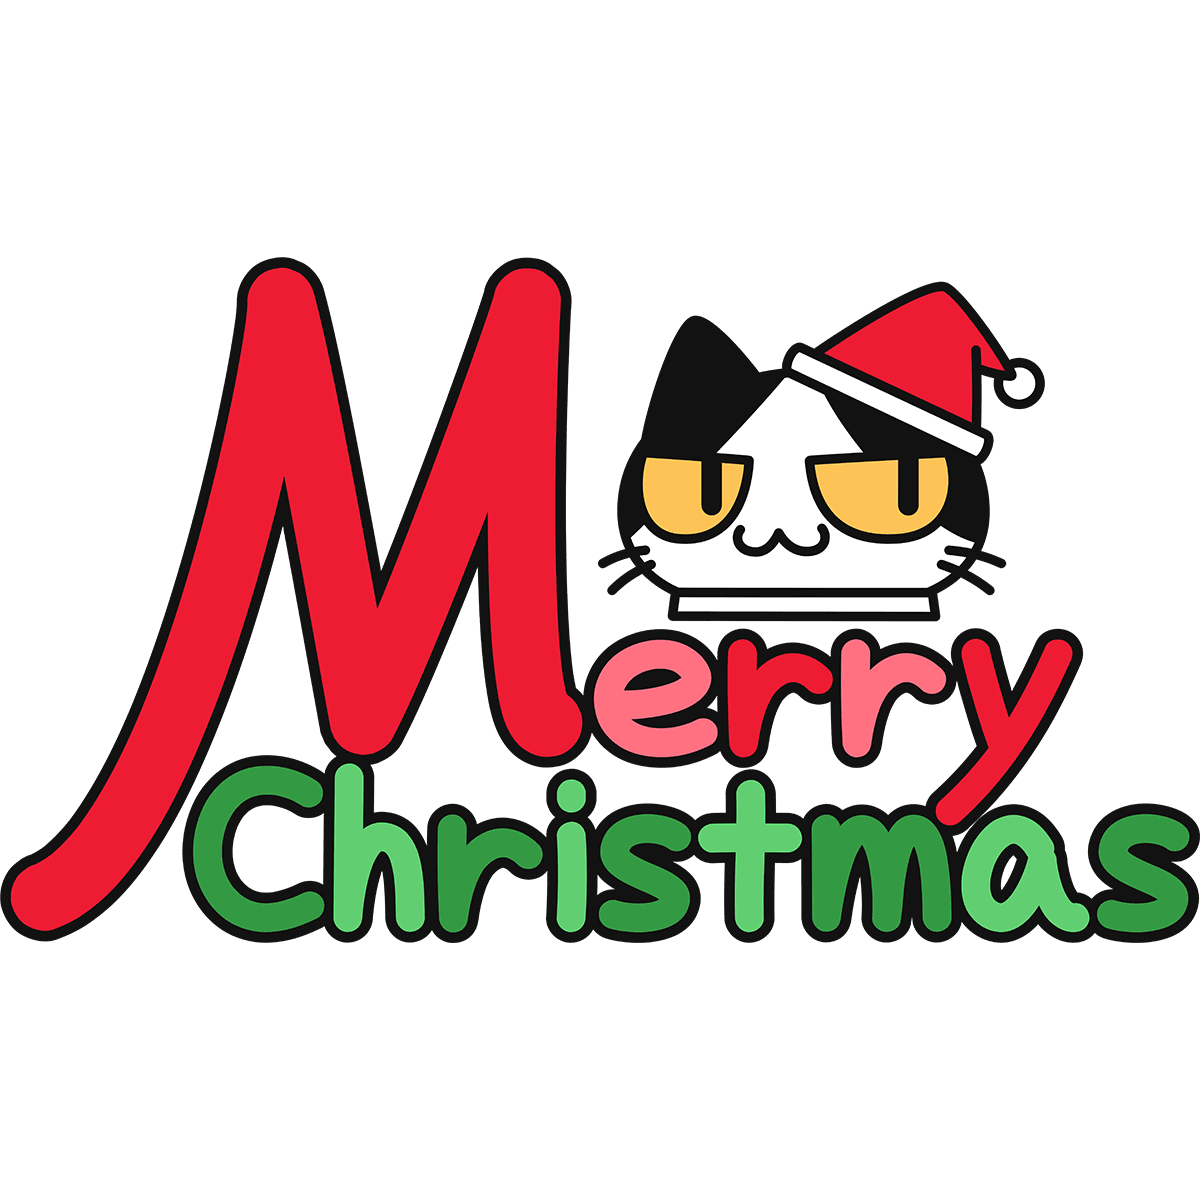 メリークリスマスと猫サンタの無料イラスト